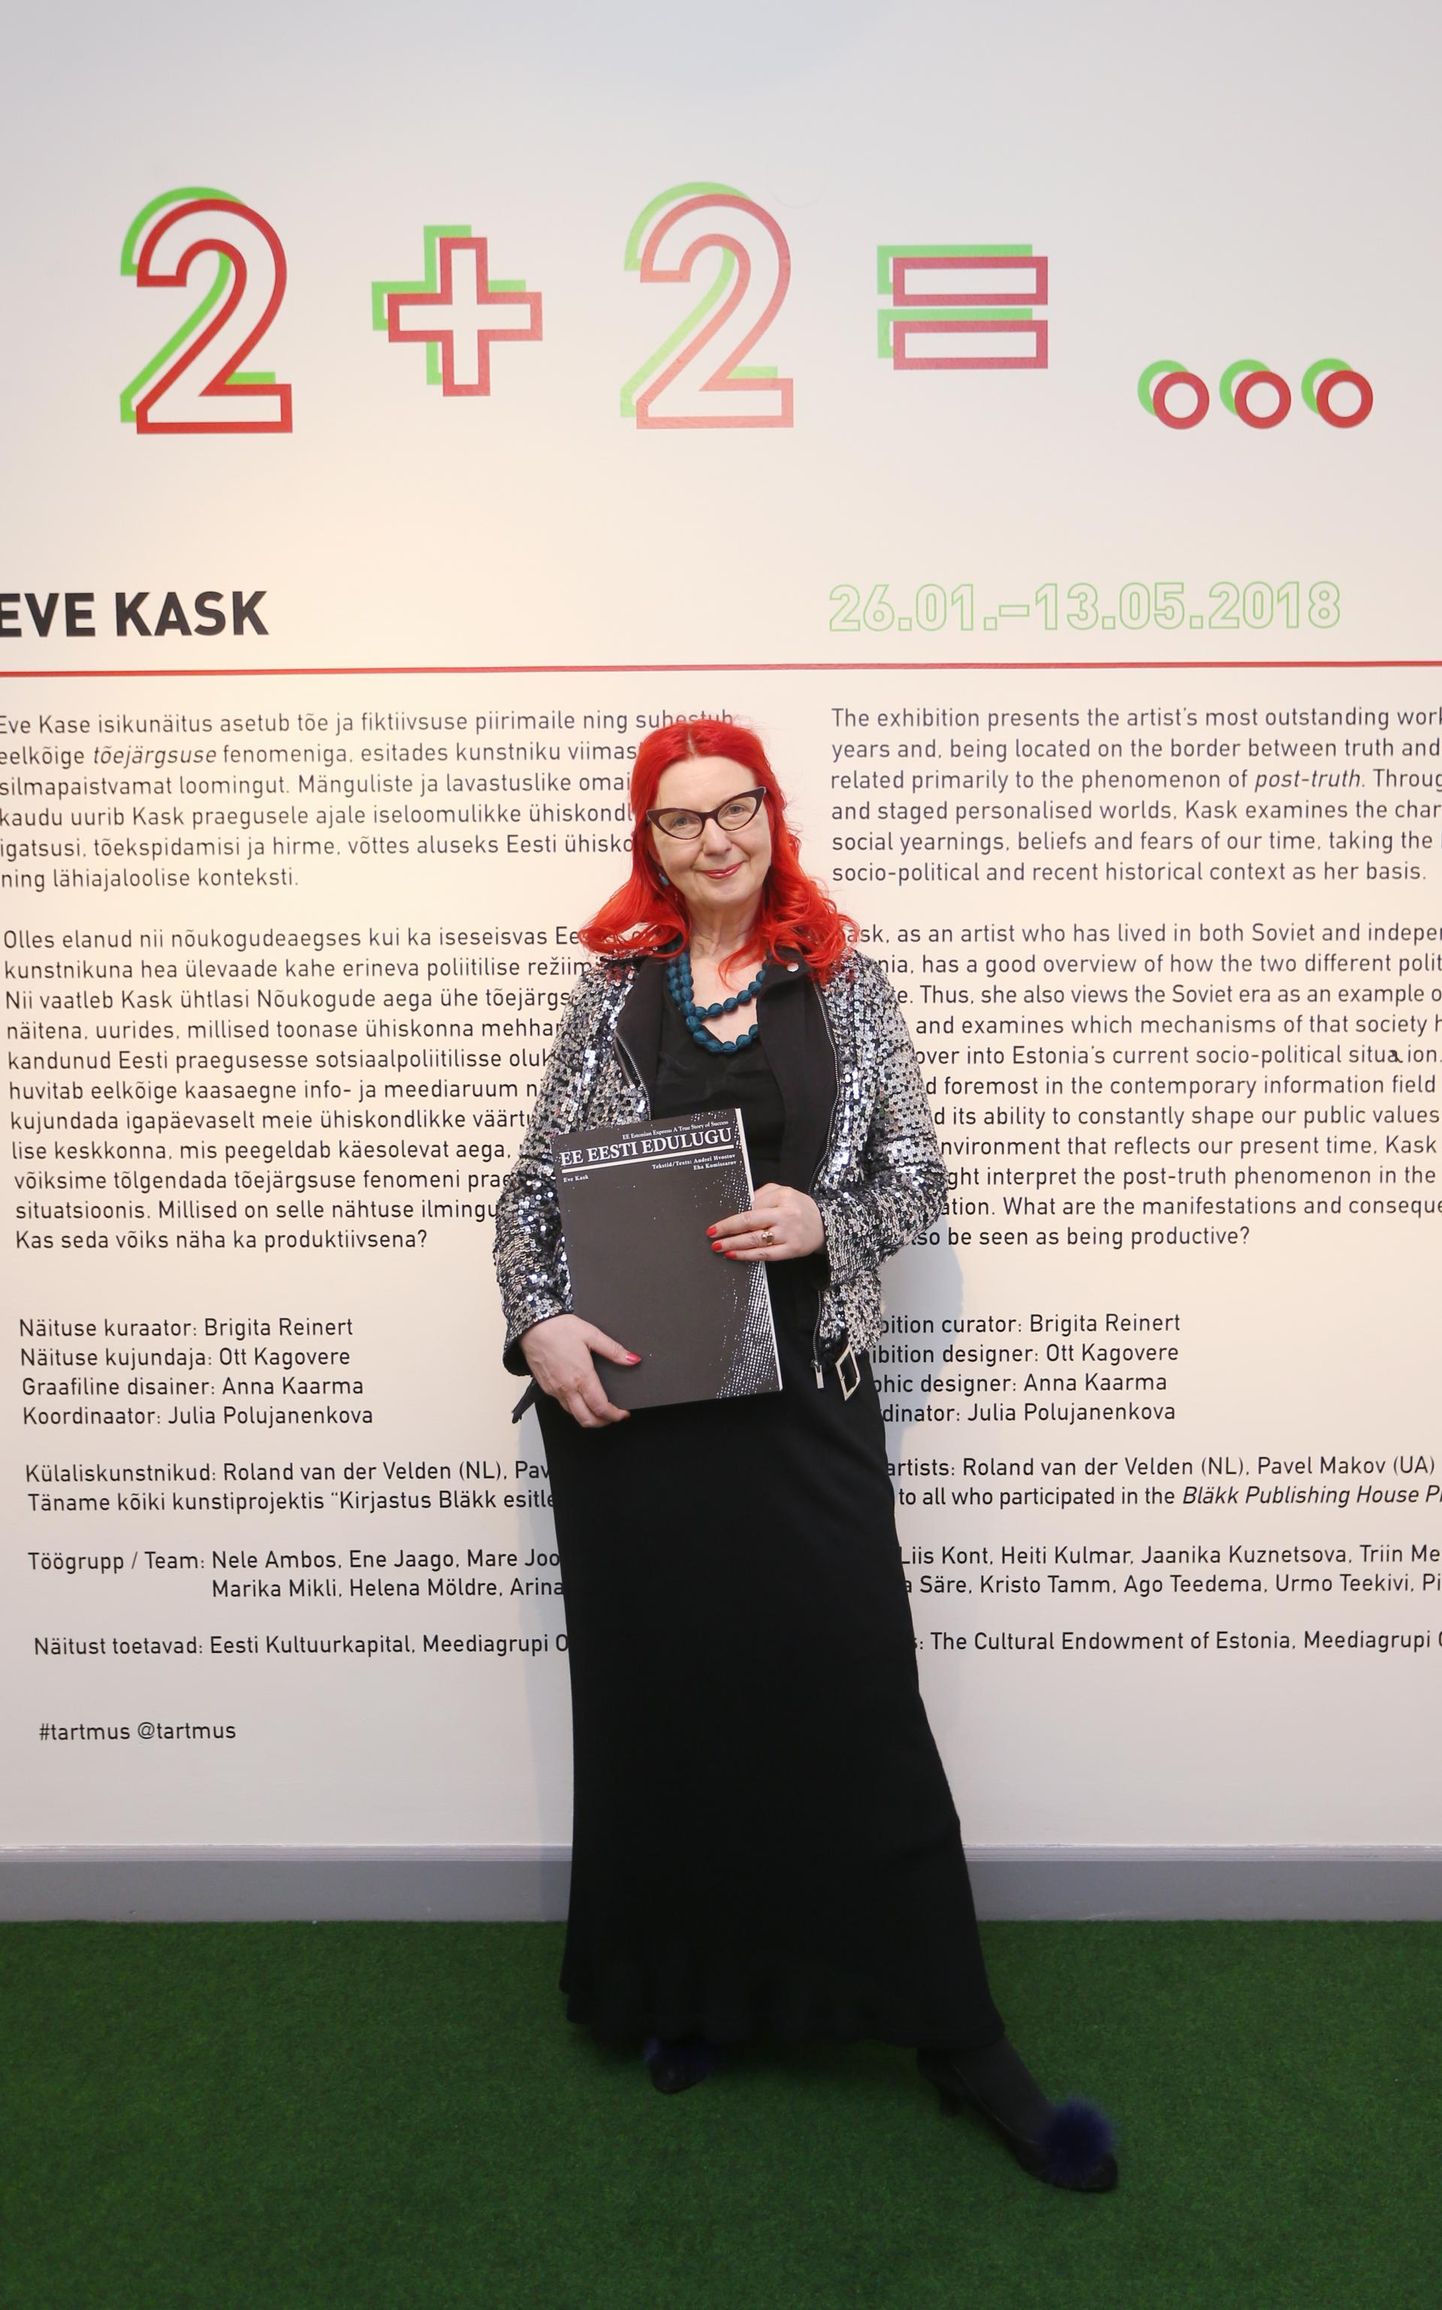 Eve Kask hoidis isikunäituse avamisel 25. jaanuaril käes äsja trükivalgust näinud autoriraamatut «EE Eesti edulugu», mis avab ka väljapaneku teemasid.